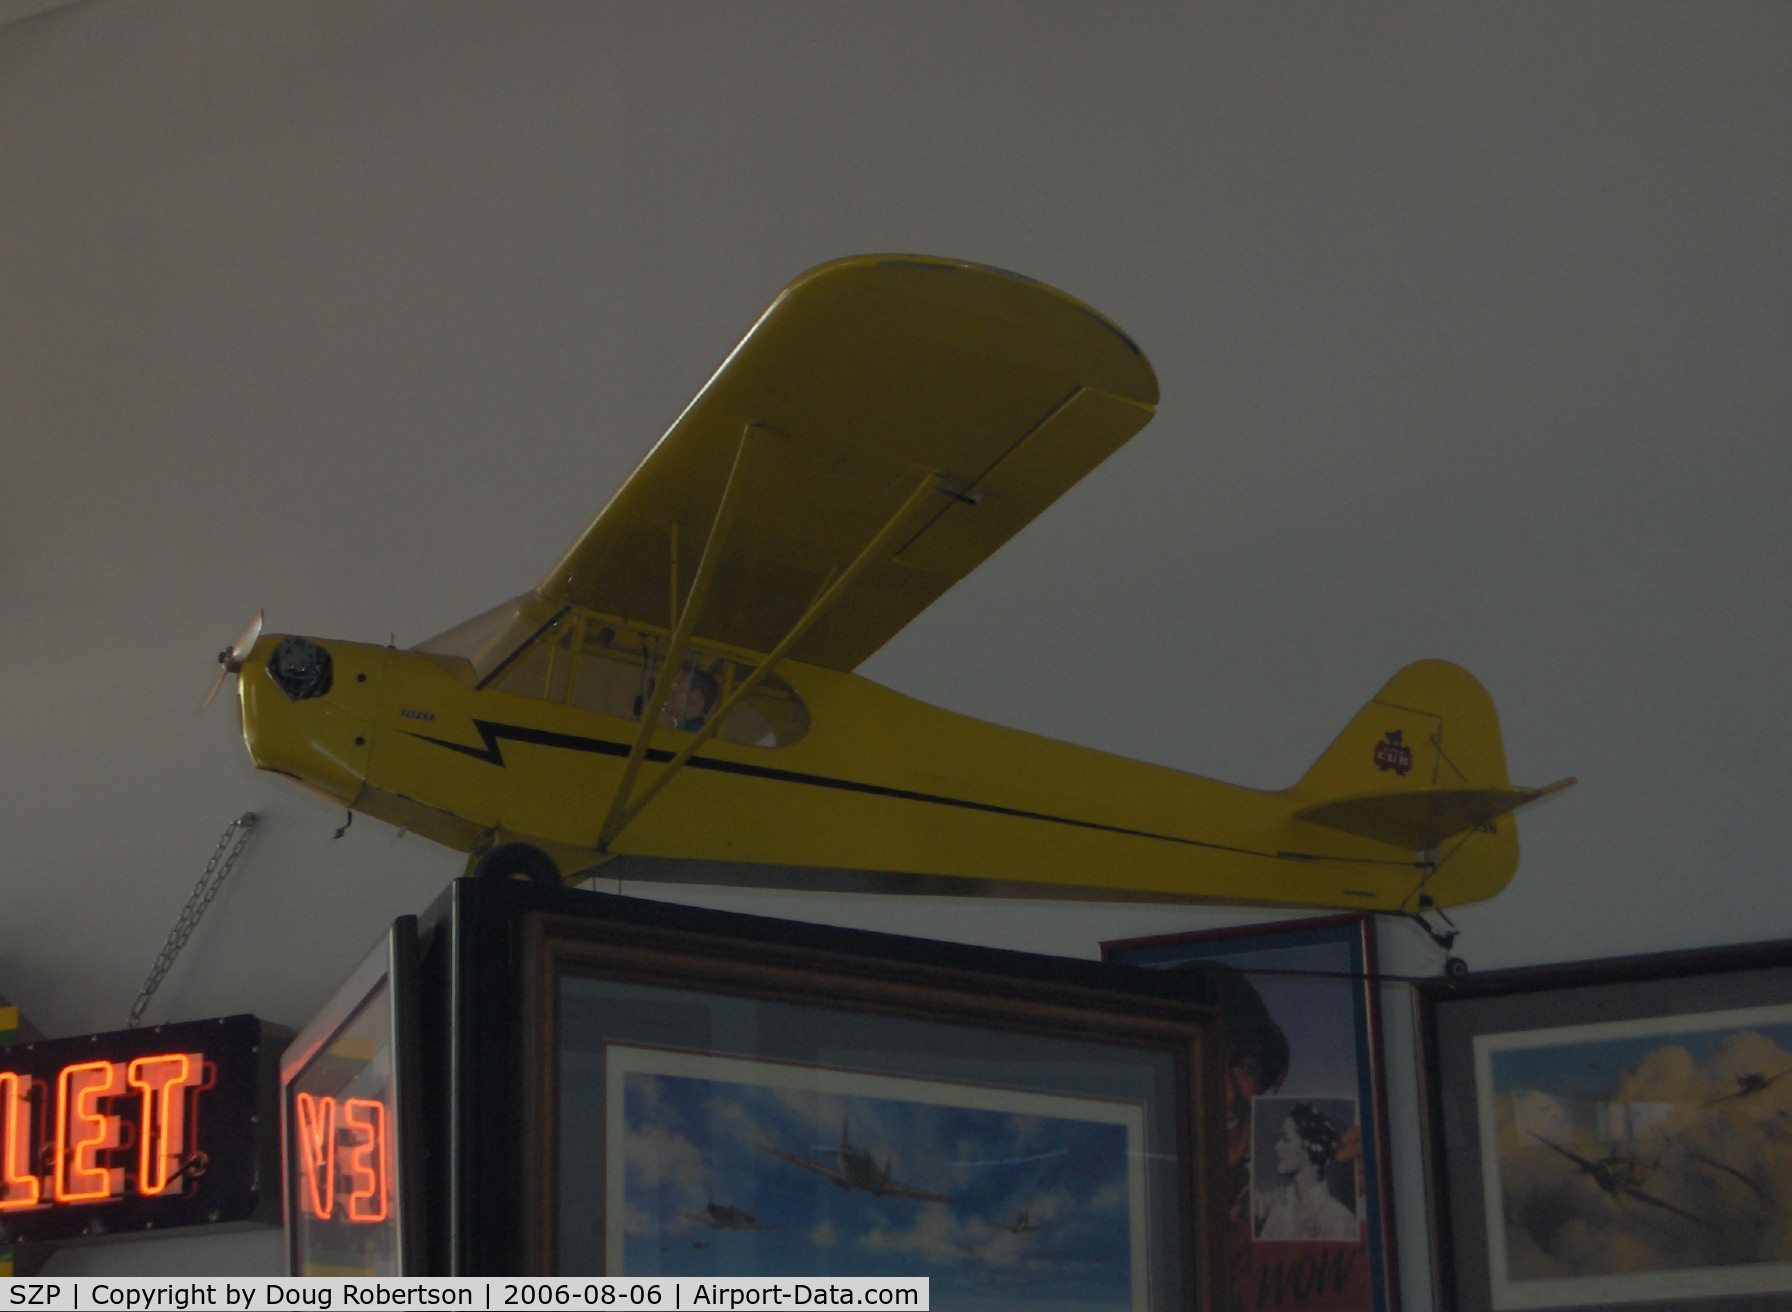 Santa Paula Airport (SZP) - RC scale model of NC5793N 1944 Piper J3C-65 CUB